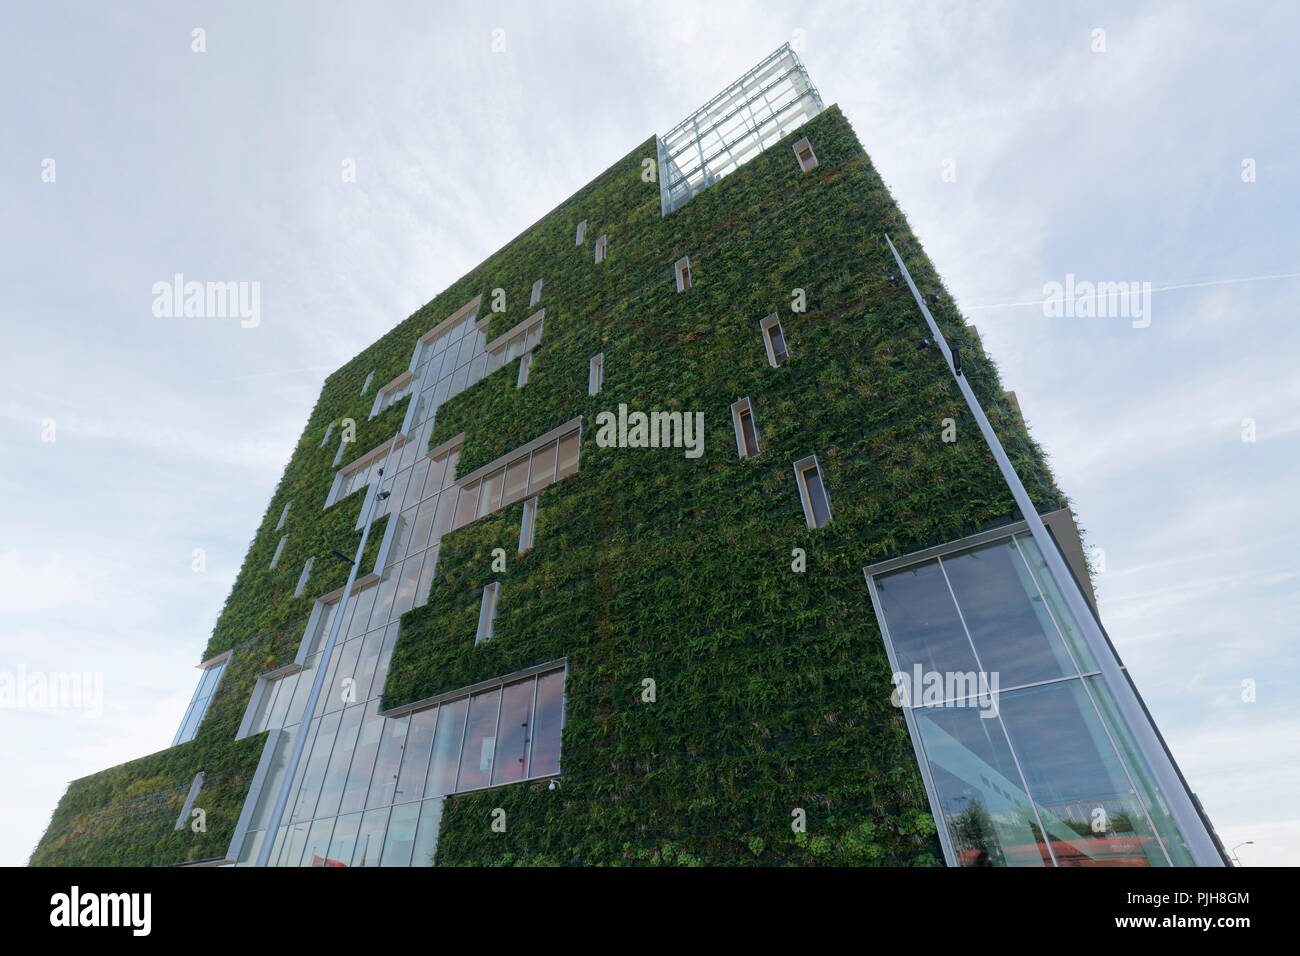 Bâtiment public planté avec façade, construction écologique, nouvelle Mairie, Venlo, Limbourg, Pays-Bas Banque D'Images